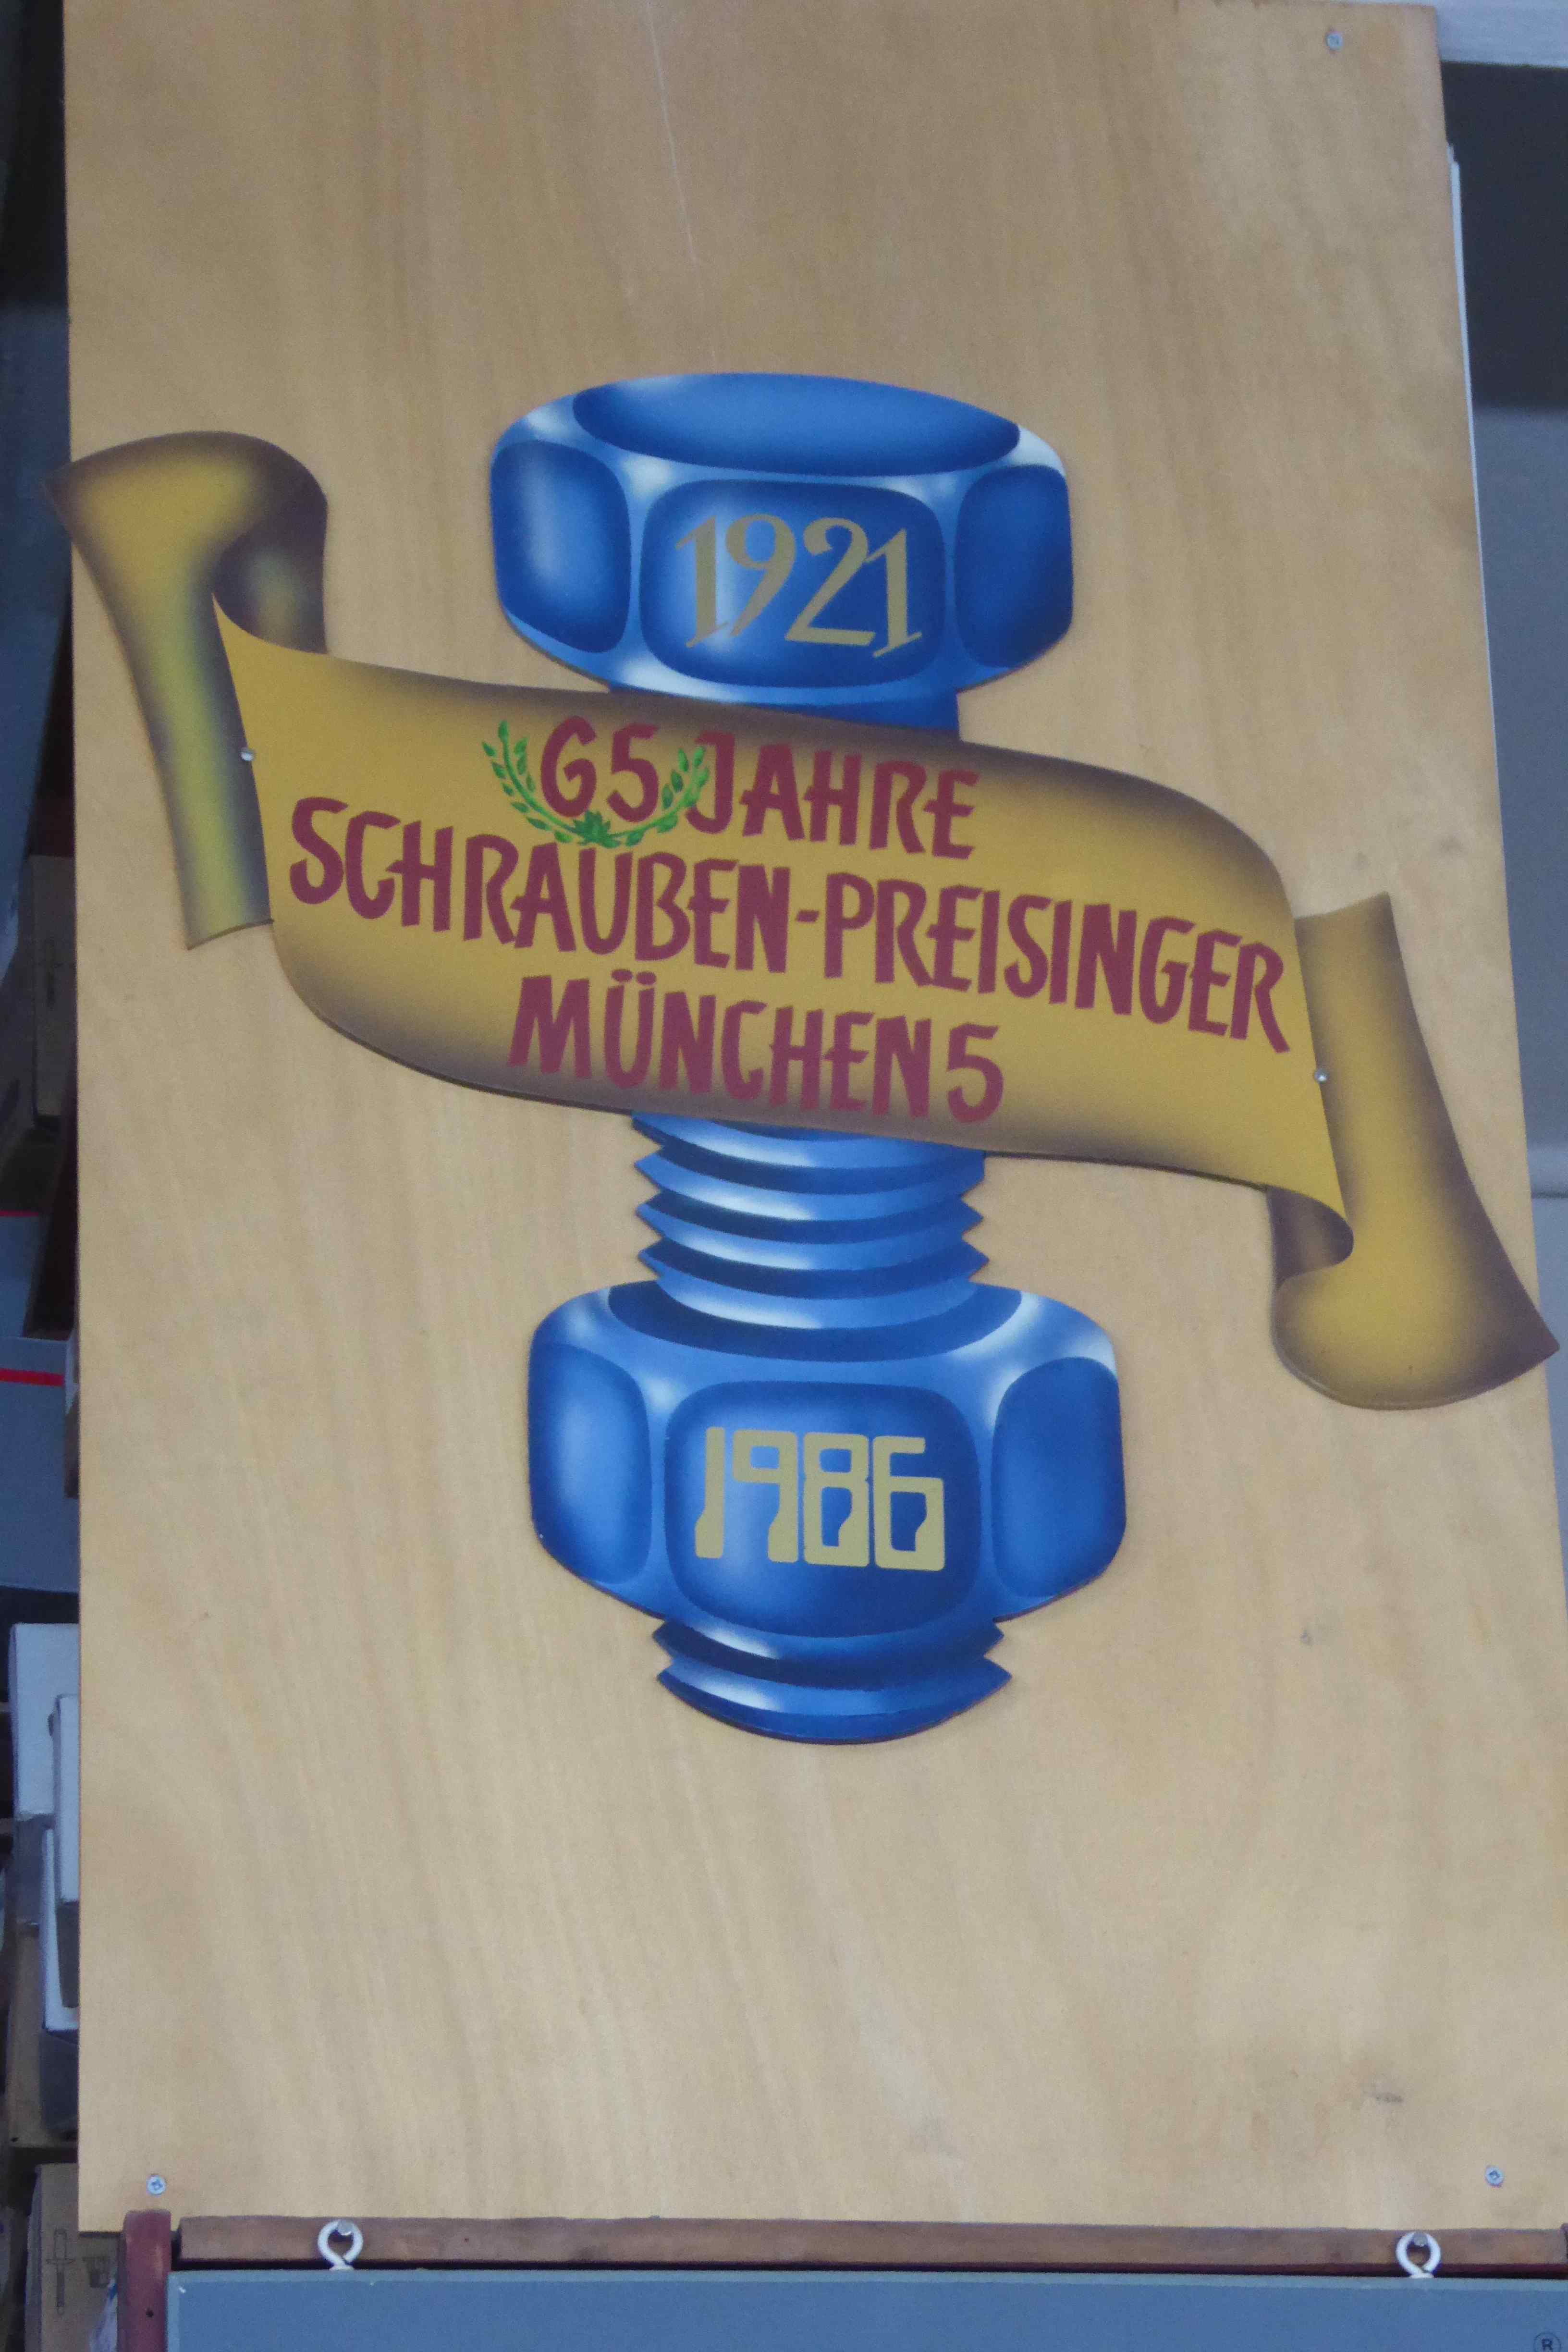 Bild 4 Schrauben-Preisinger GmbH in München